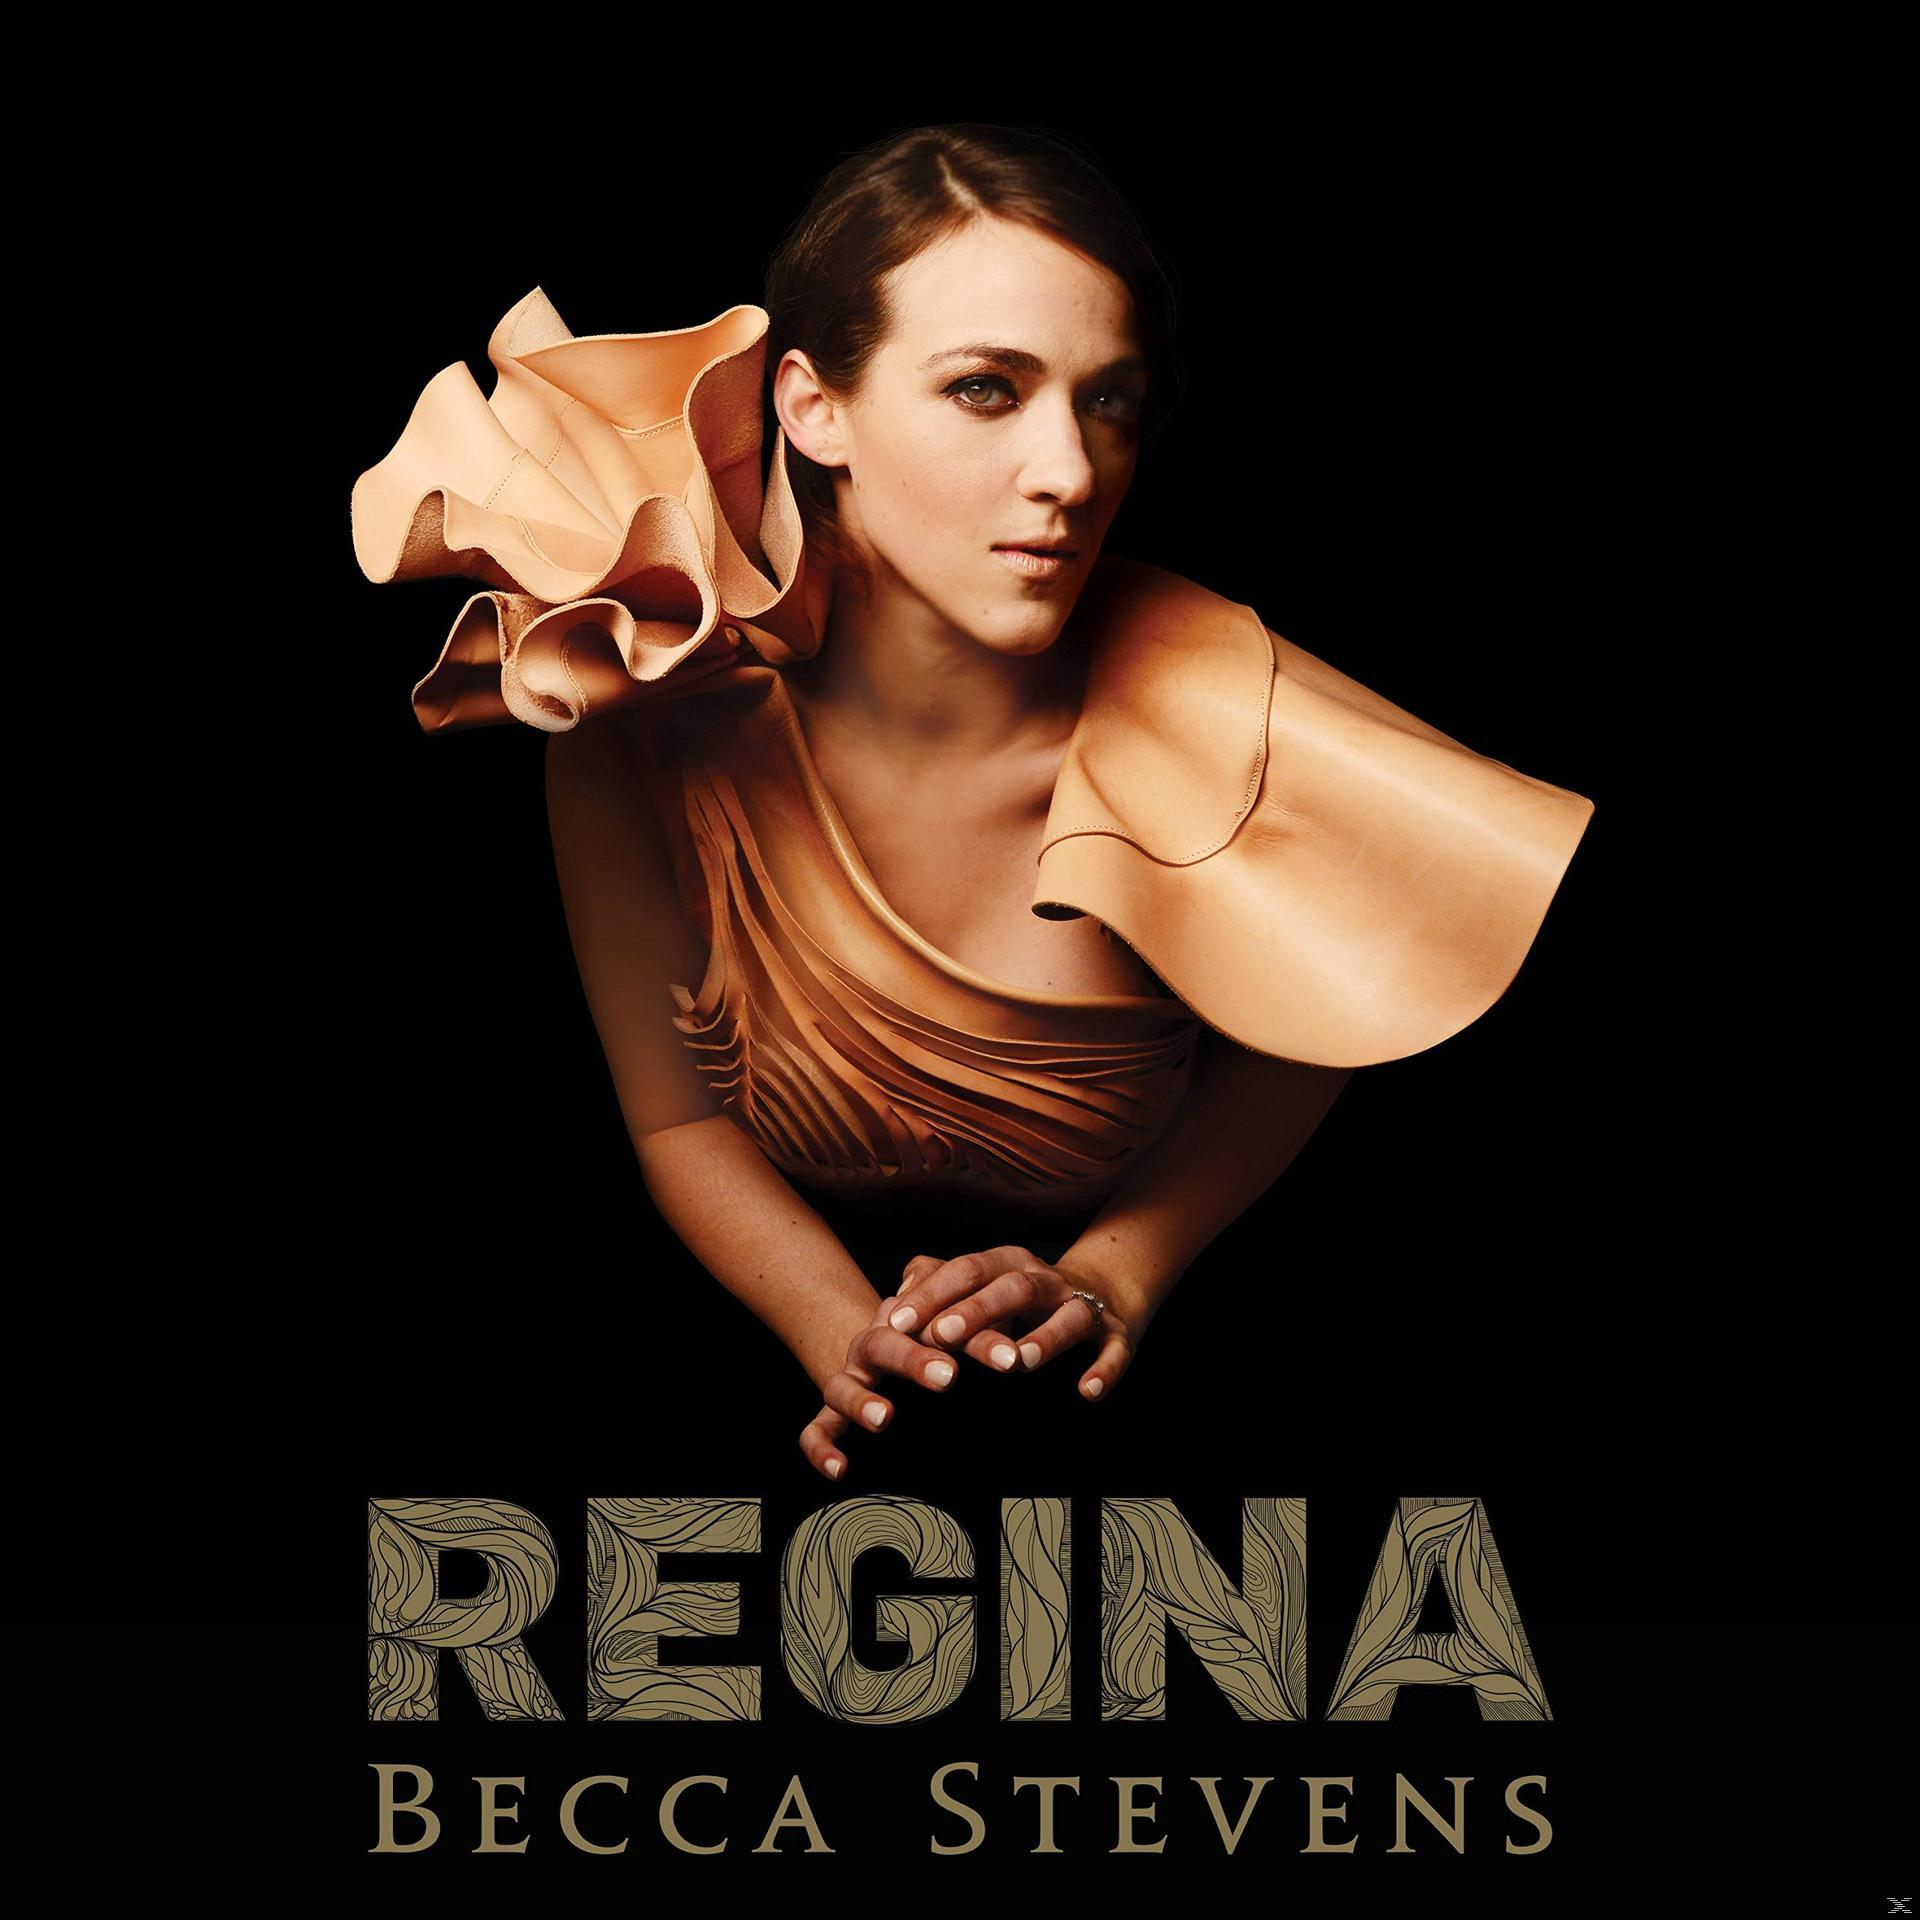 - (Vinyl) Regina - Becca Stevens